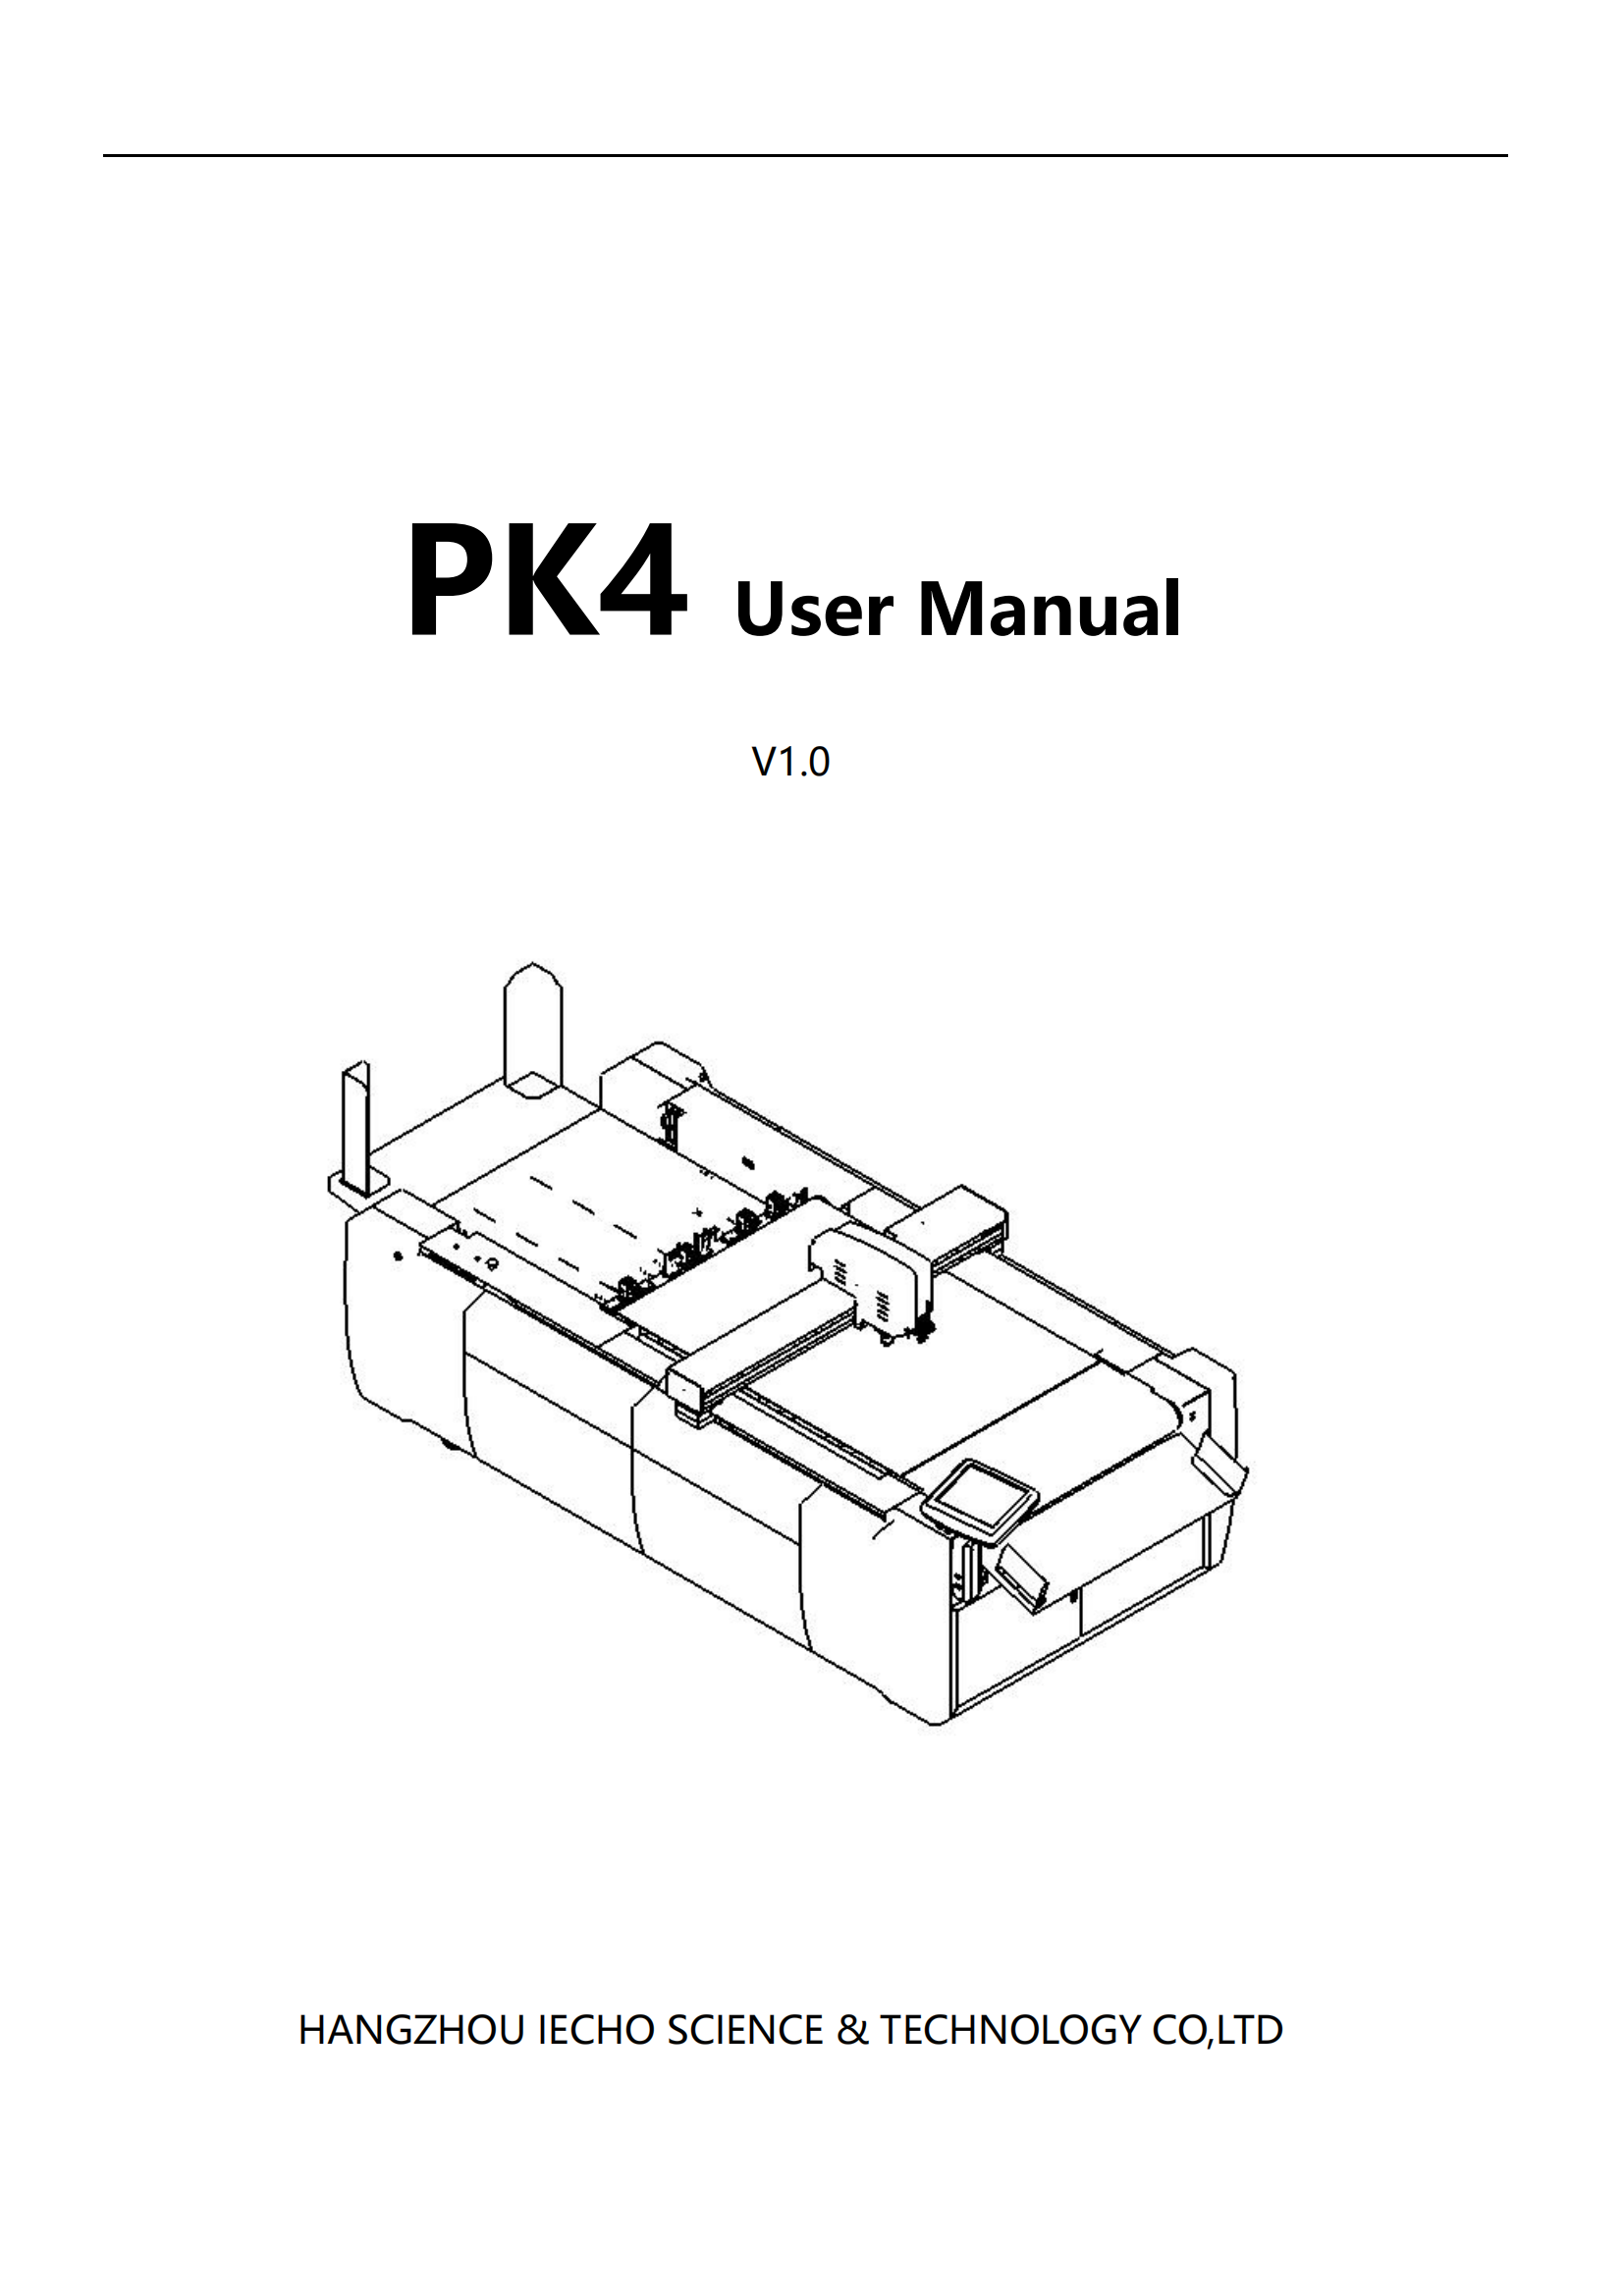 PK4 User Manual